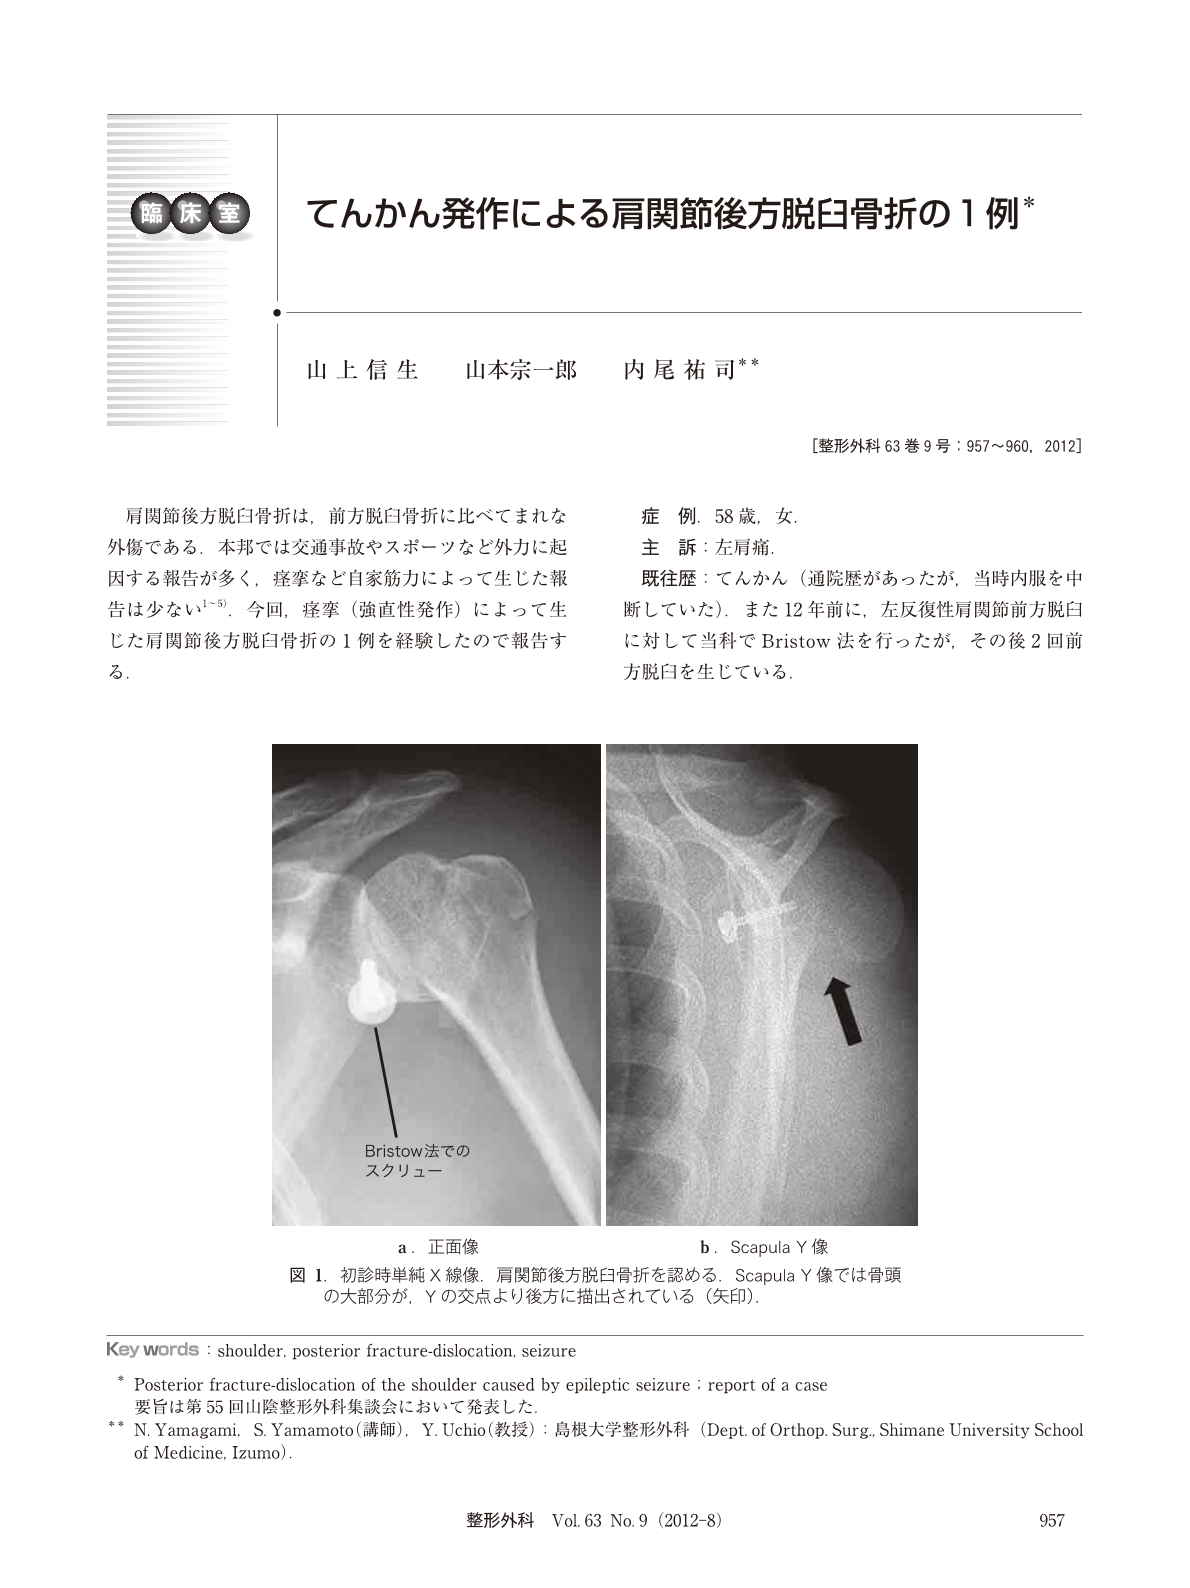 てんかん発作による肩関節後方脱臼骨折の1例 臨床雑誌整形外科 63巻9号 医書 Jp